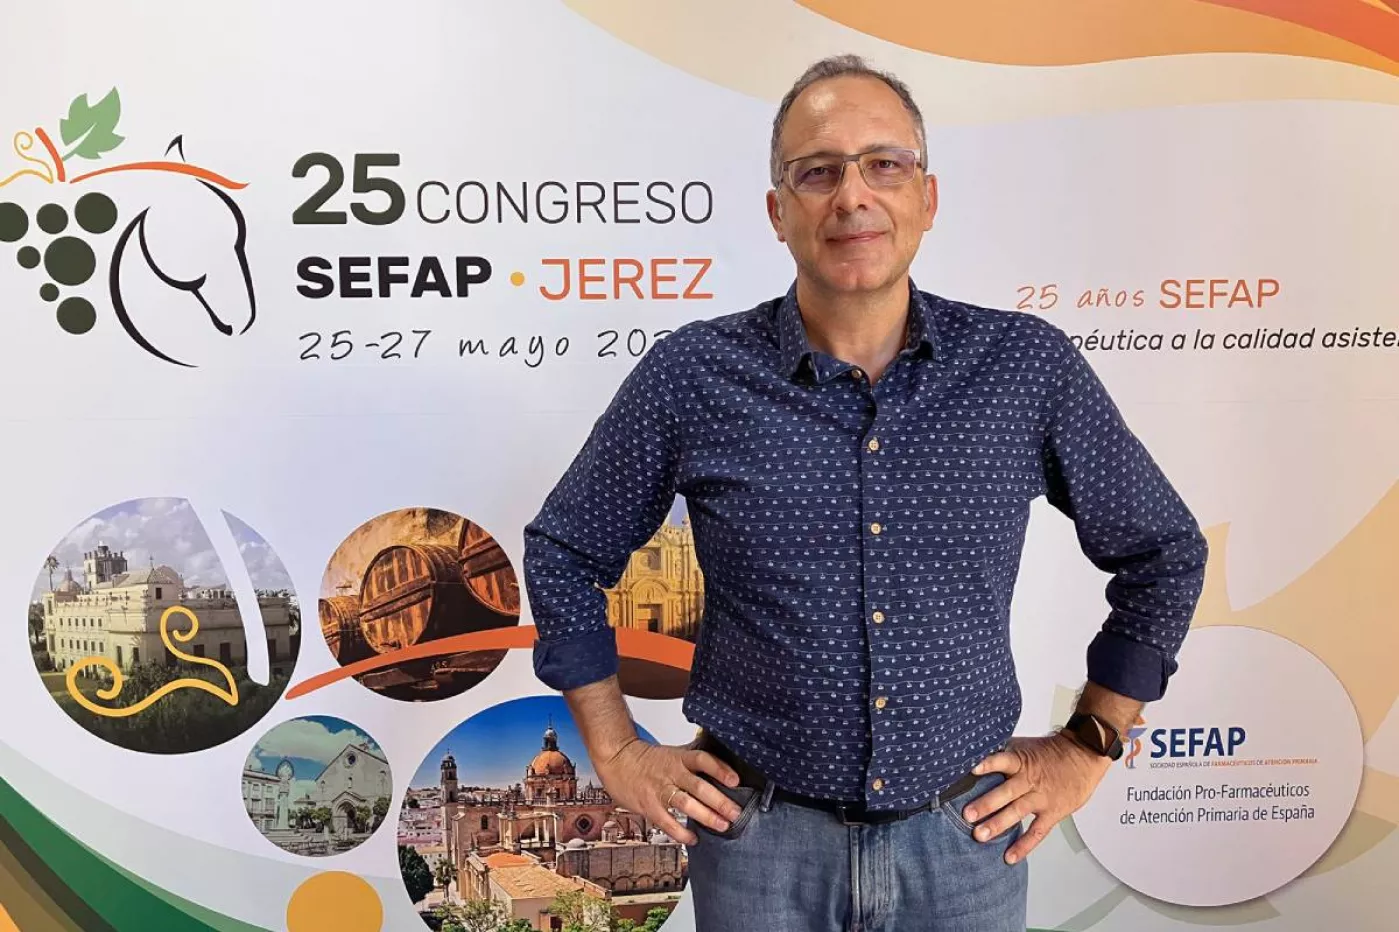 José Manuel Paredero ha sido elegido nuevo presidente de Sefap en la última Asamblea de socios celebrada en el marco del 25 congreso nacional celebrado la semana pasada en Jérez. Foto: SEFAP.